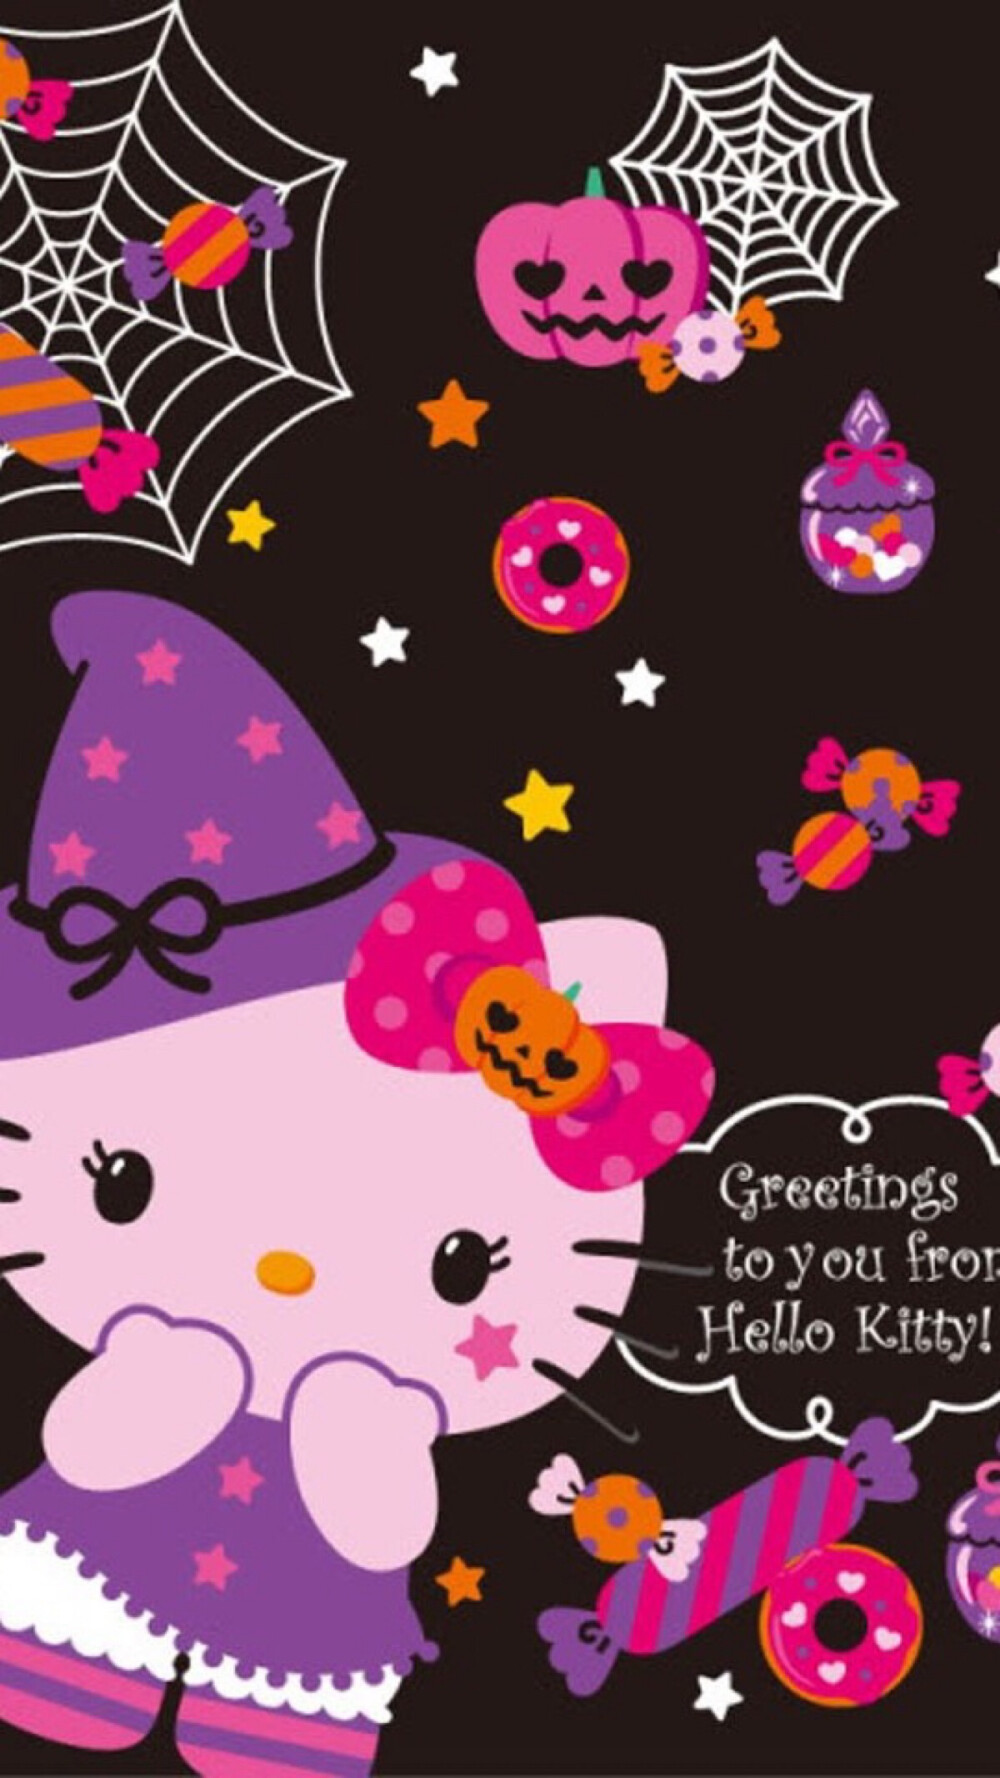 新新holle kitty 猫 - 堆糖,美图壁纸兴趣社区